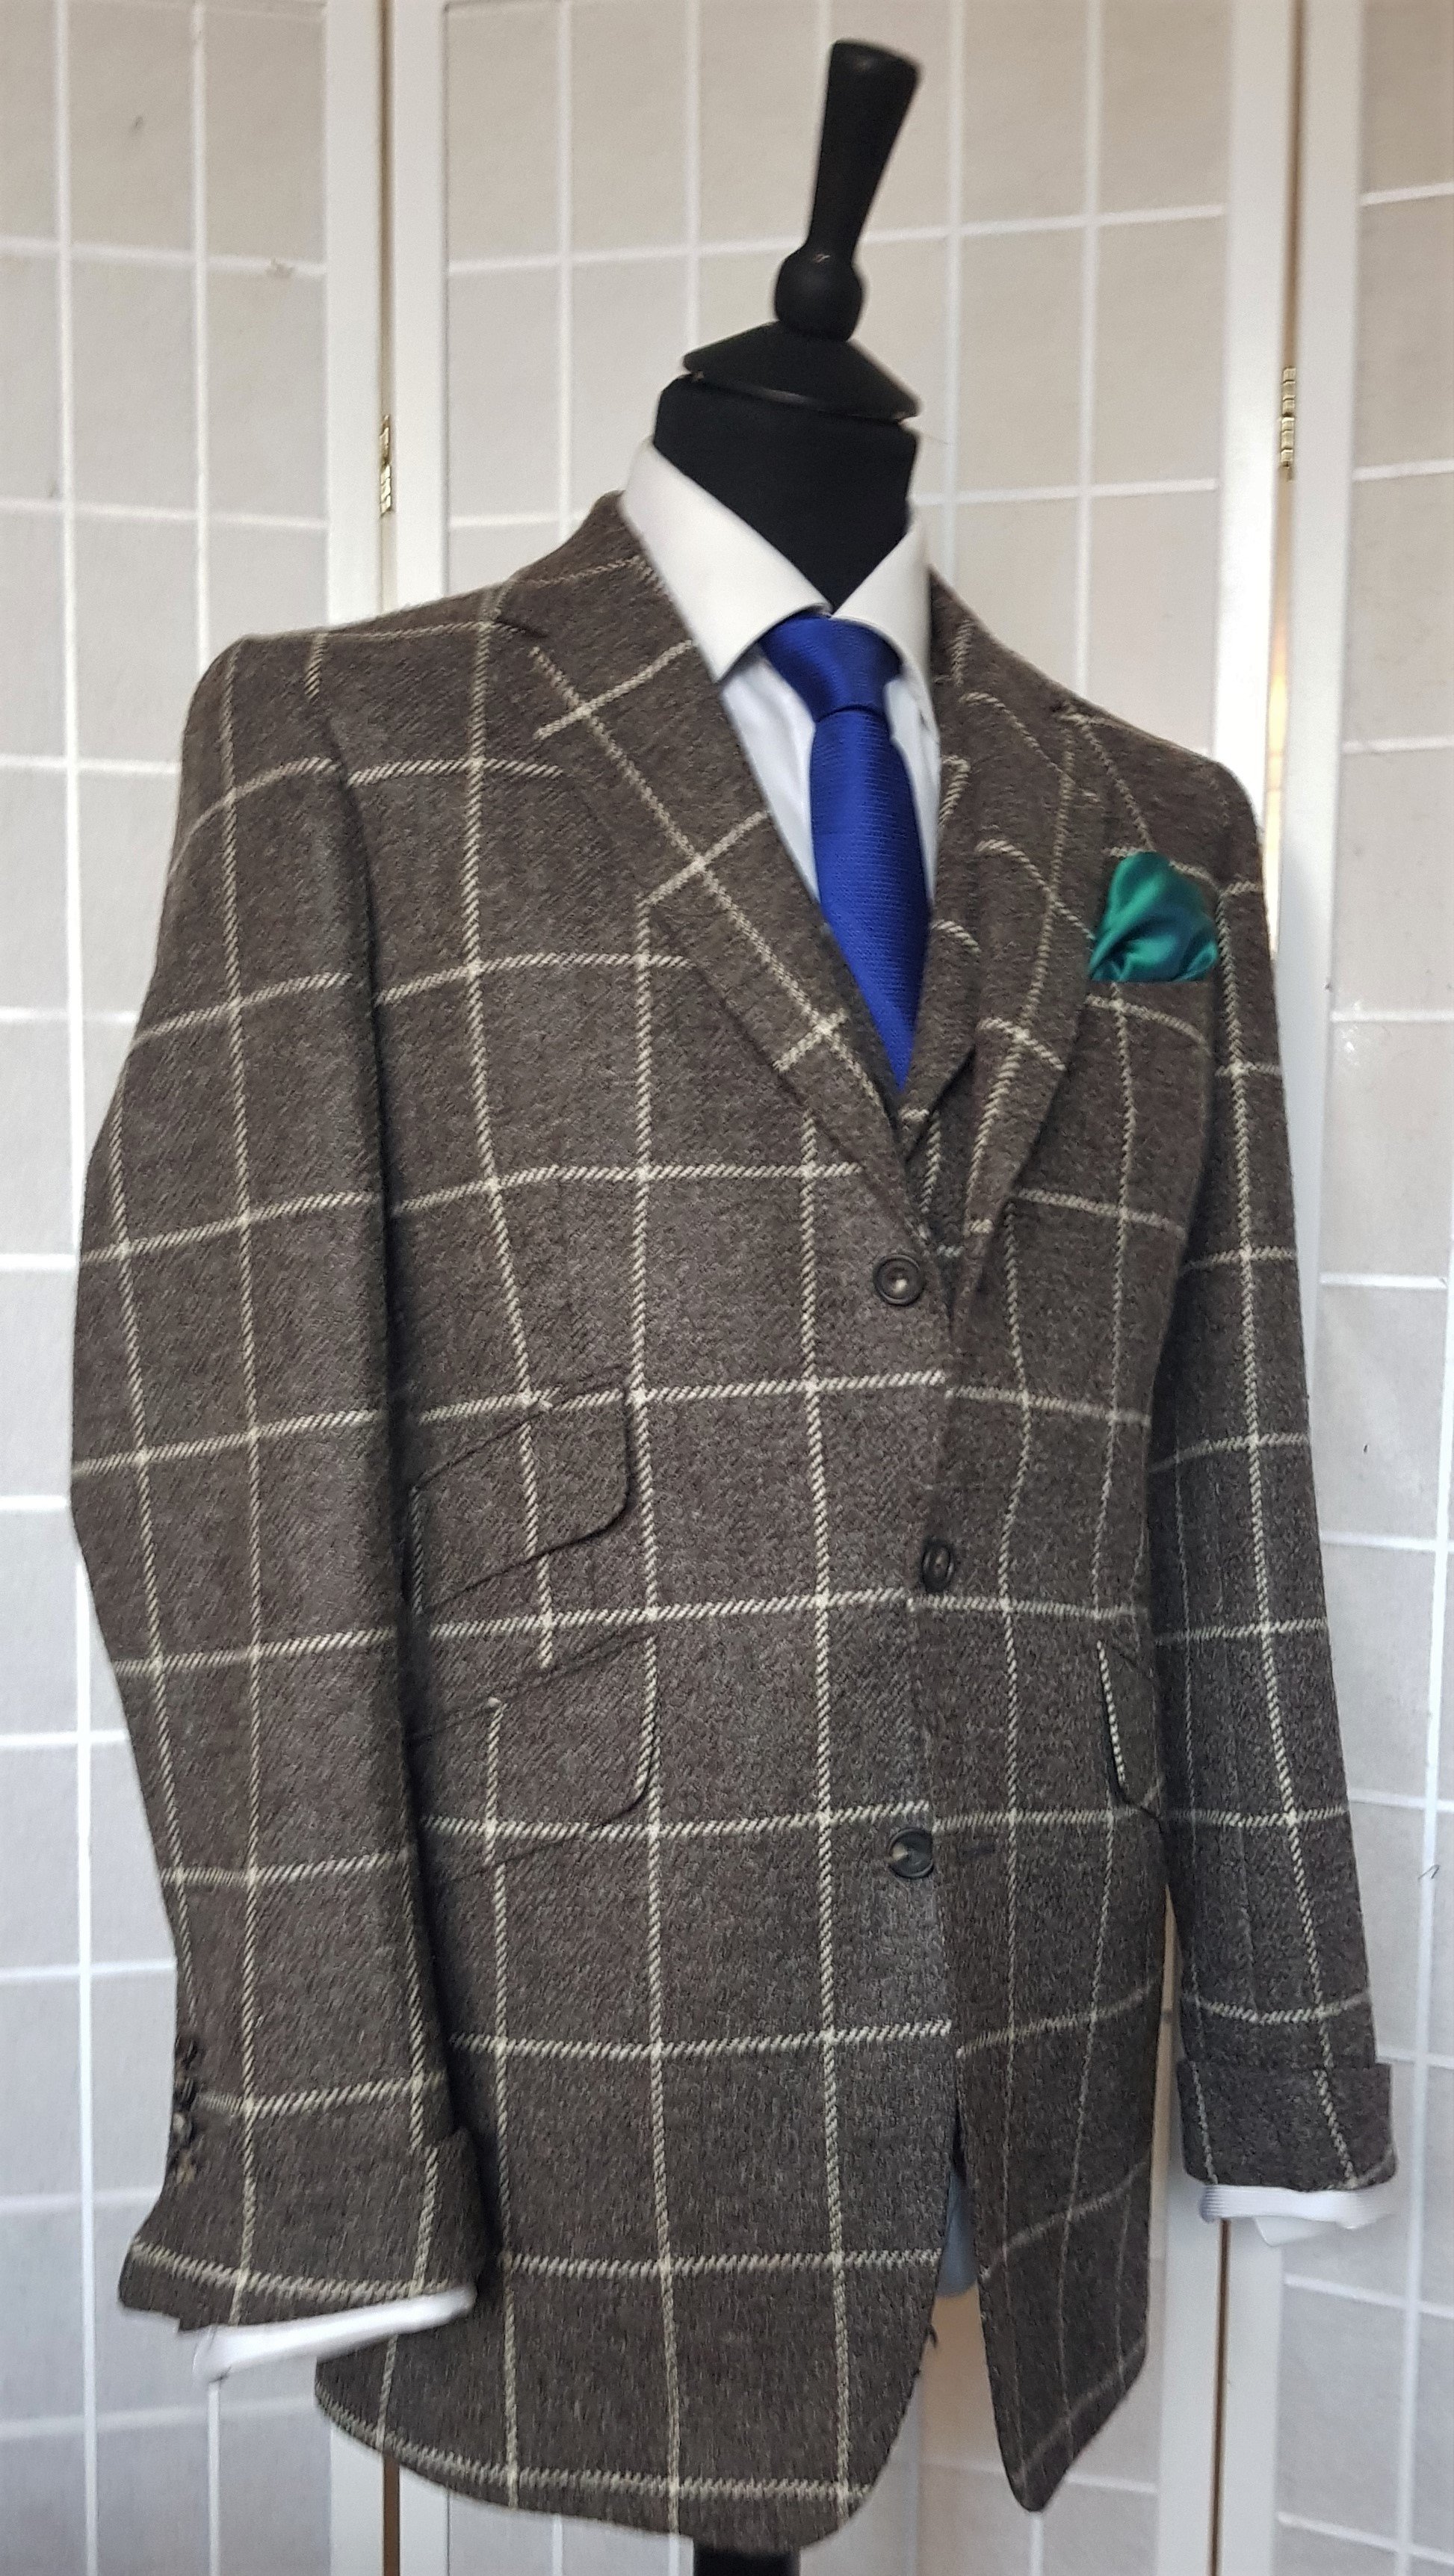 Jacket and waistcoat in undyed British yarn tweed (8).jpg